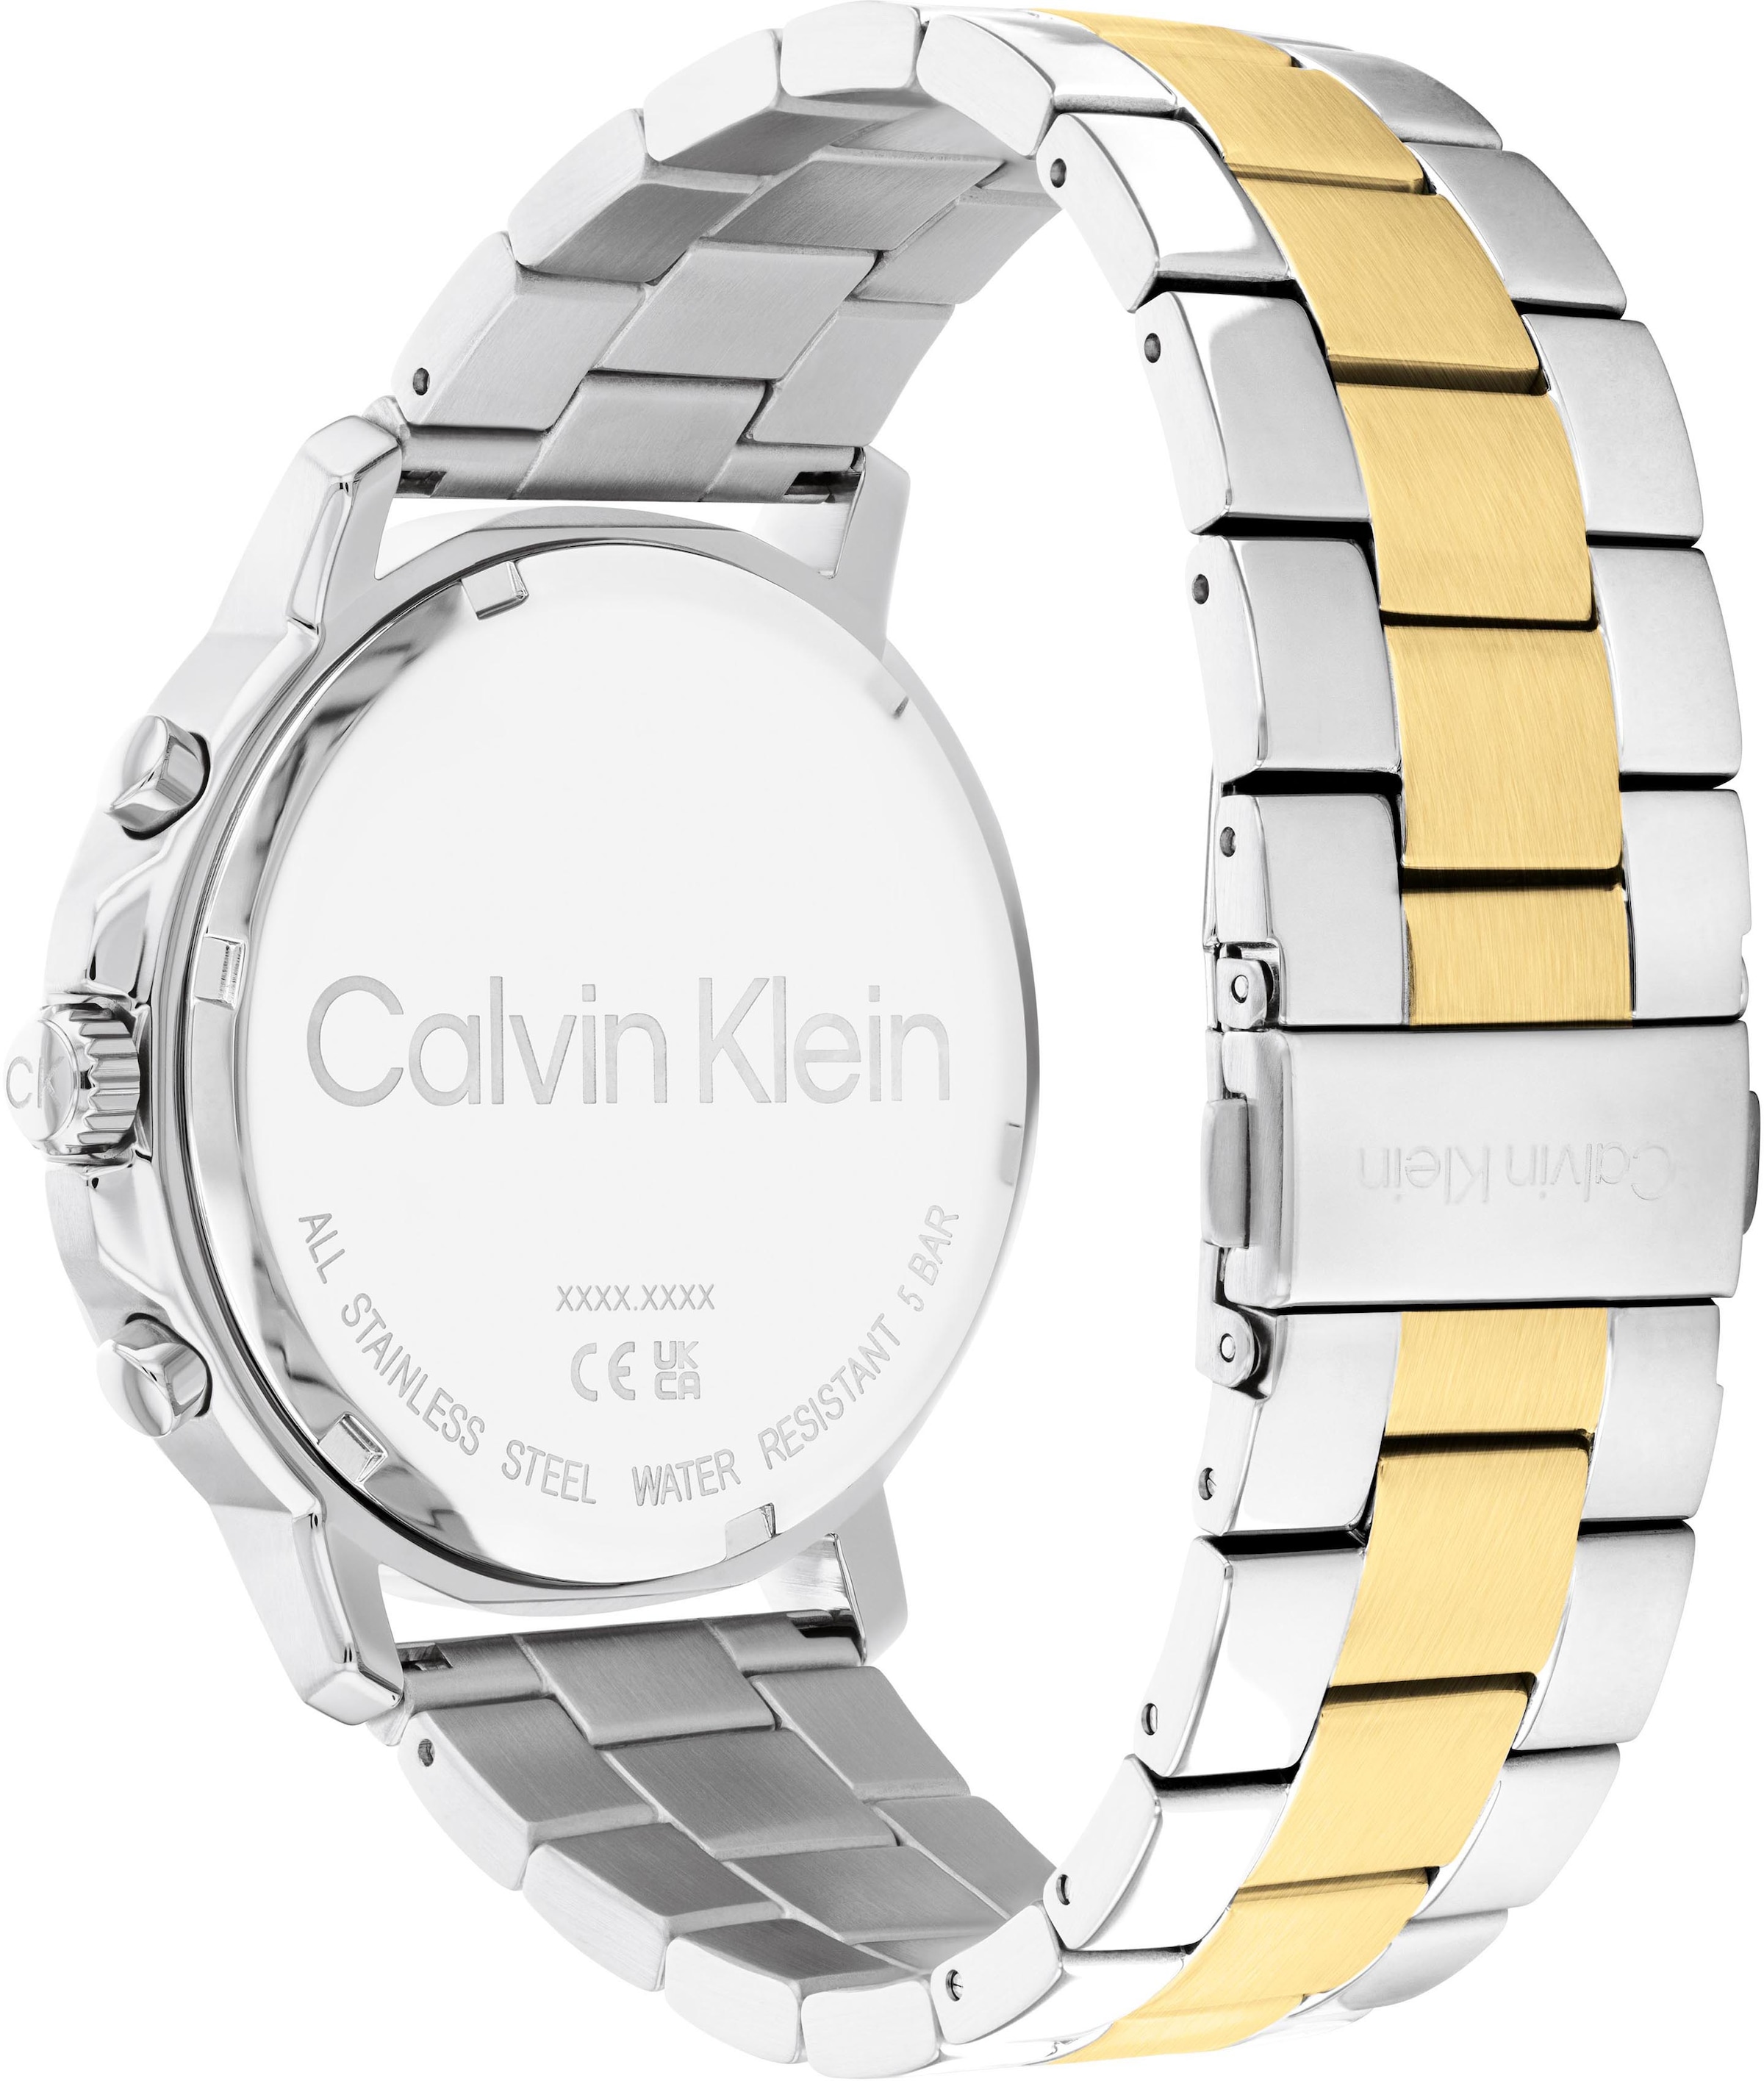 ♕ Calvin Klein Multifunktionsuhr »Gauge Sport, 25200070« versandkostenfrei  auf